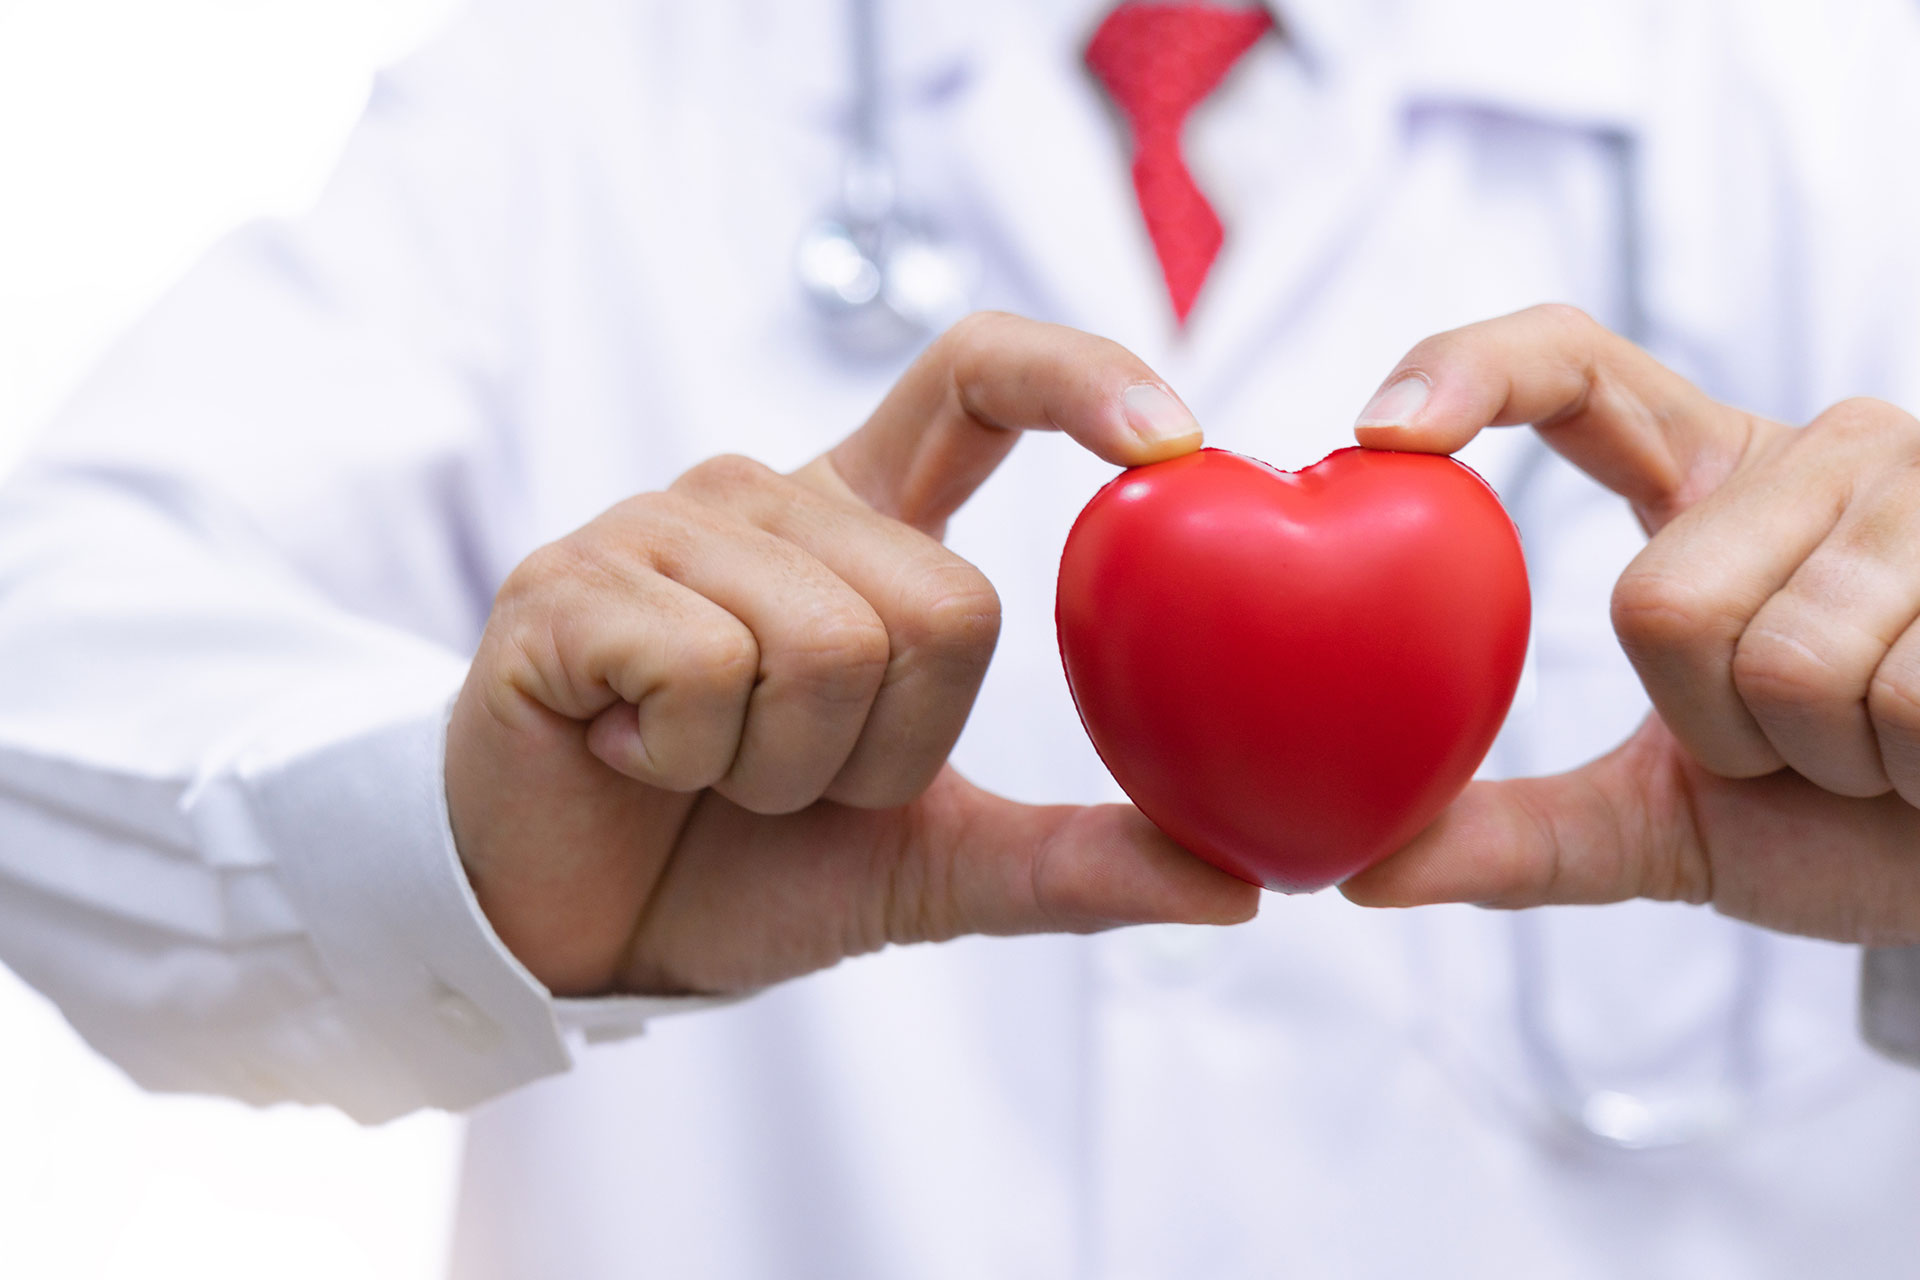 Seis claves simples para mejorar la salud del corazón, según uno de los mejores cardiólogos del mundo